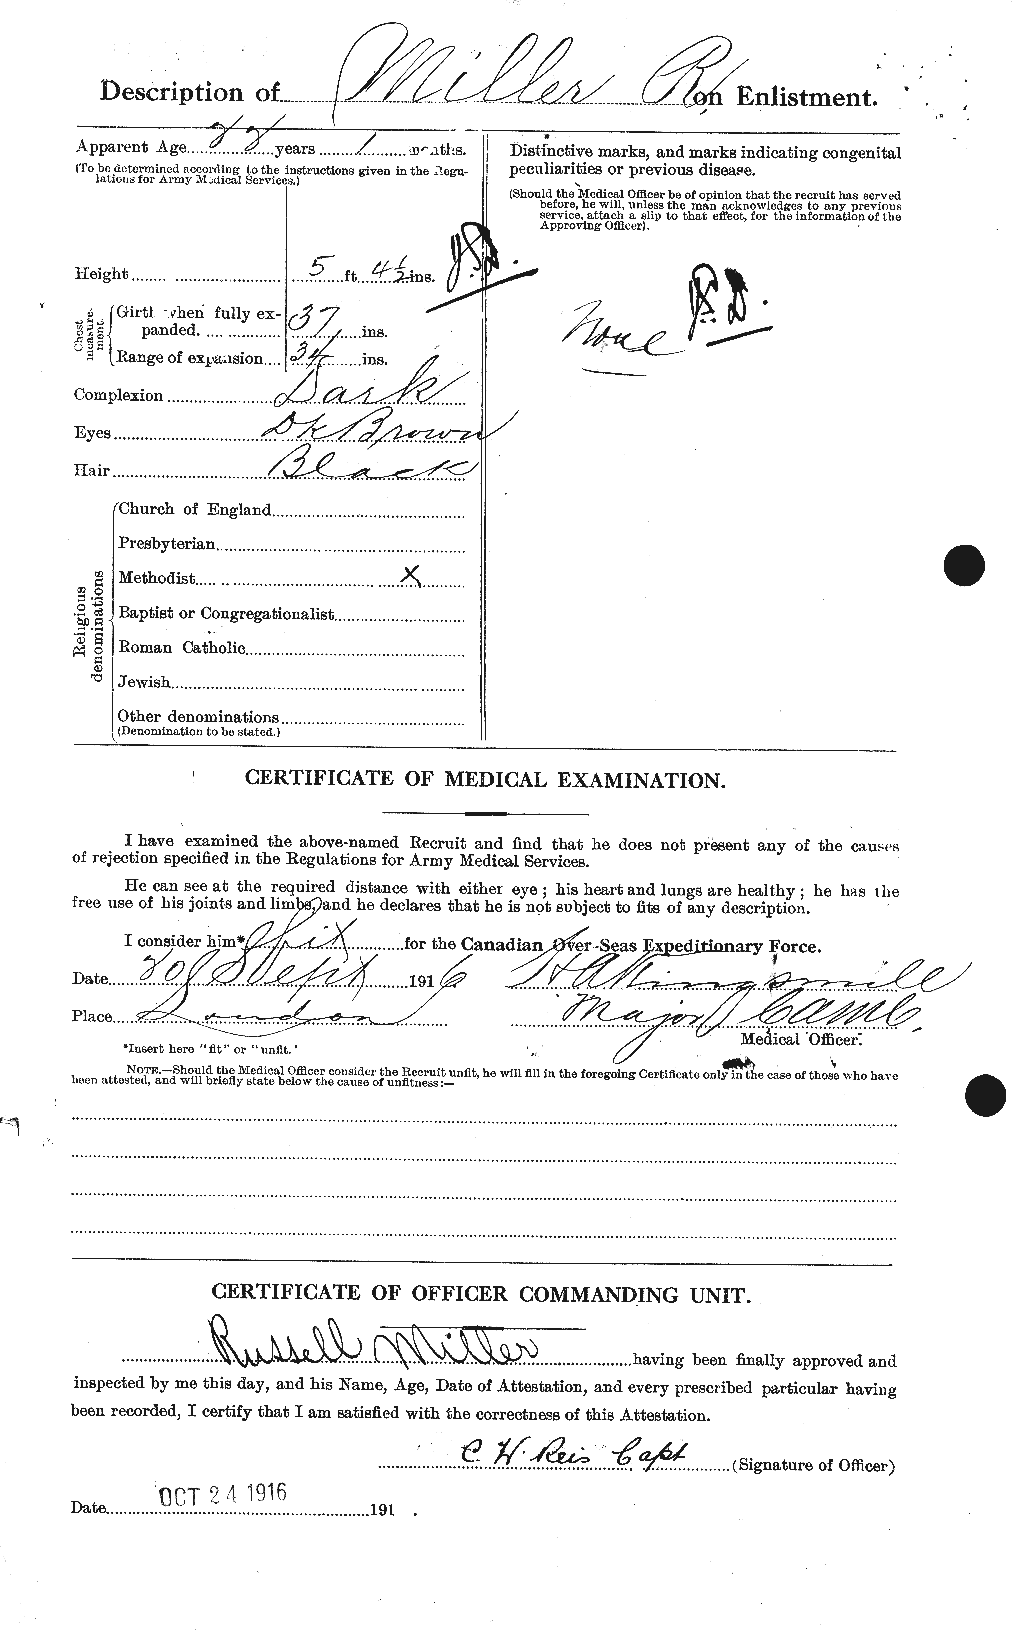 Dossiers du Personnel de la Première Guerre mondiale - CEC 501596b